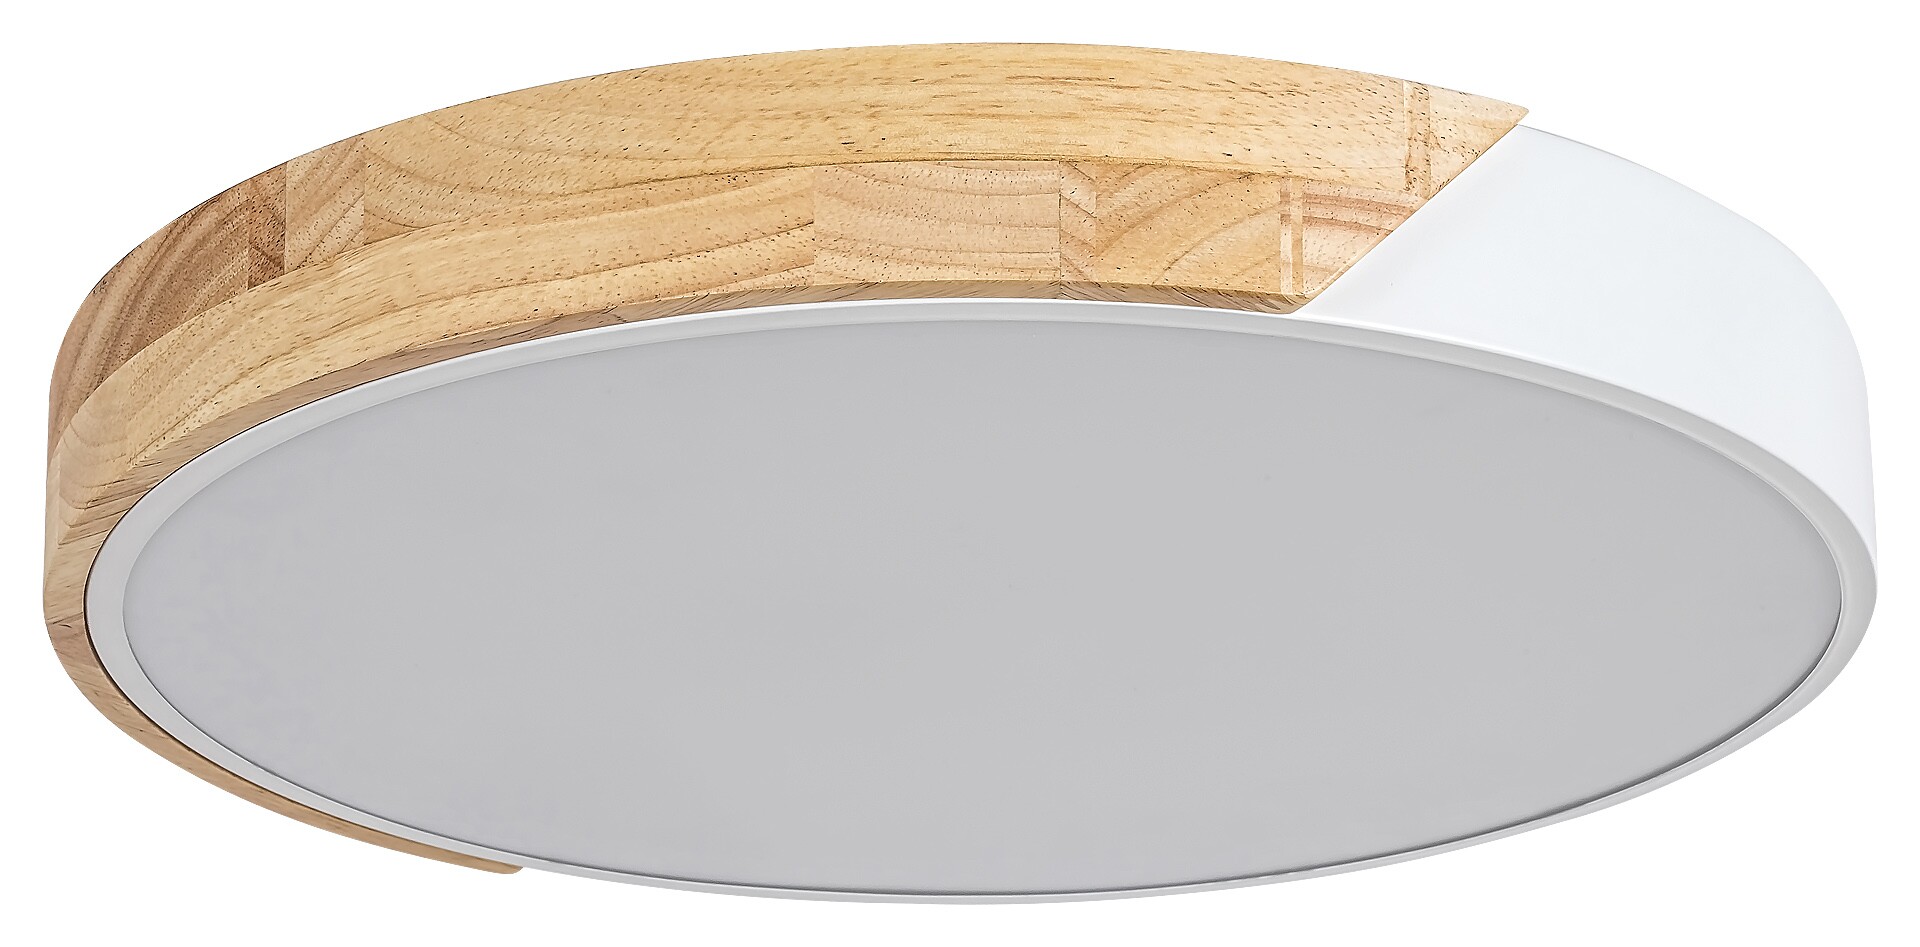 Deckenleuchte Maple 3527, 24W, 3000K, 1760lm, Metall-Holz, weiß, rund, warmweiß, ø415mm